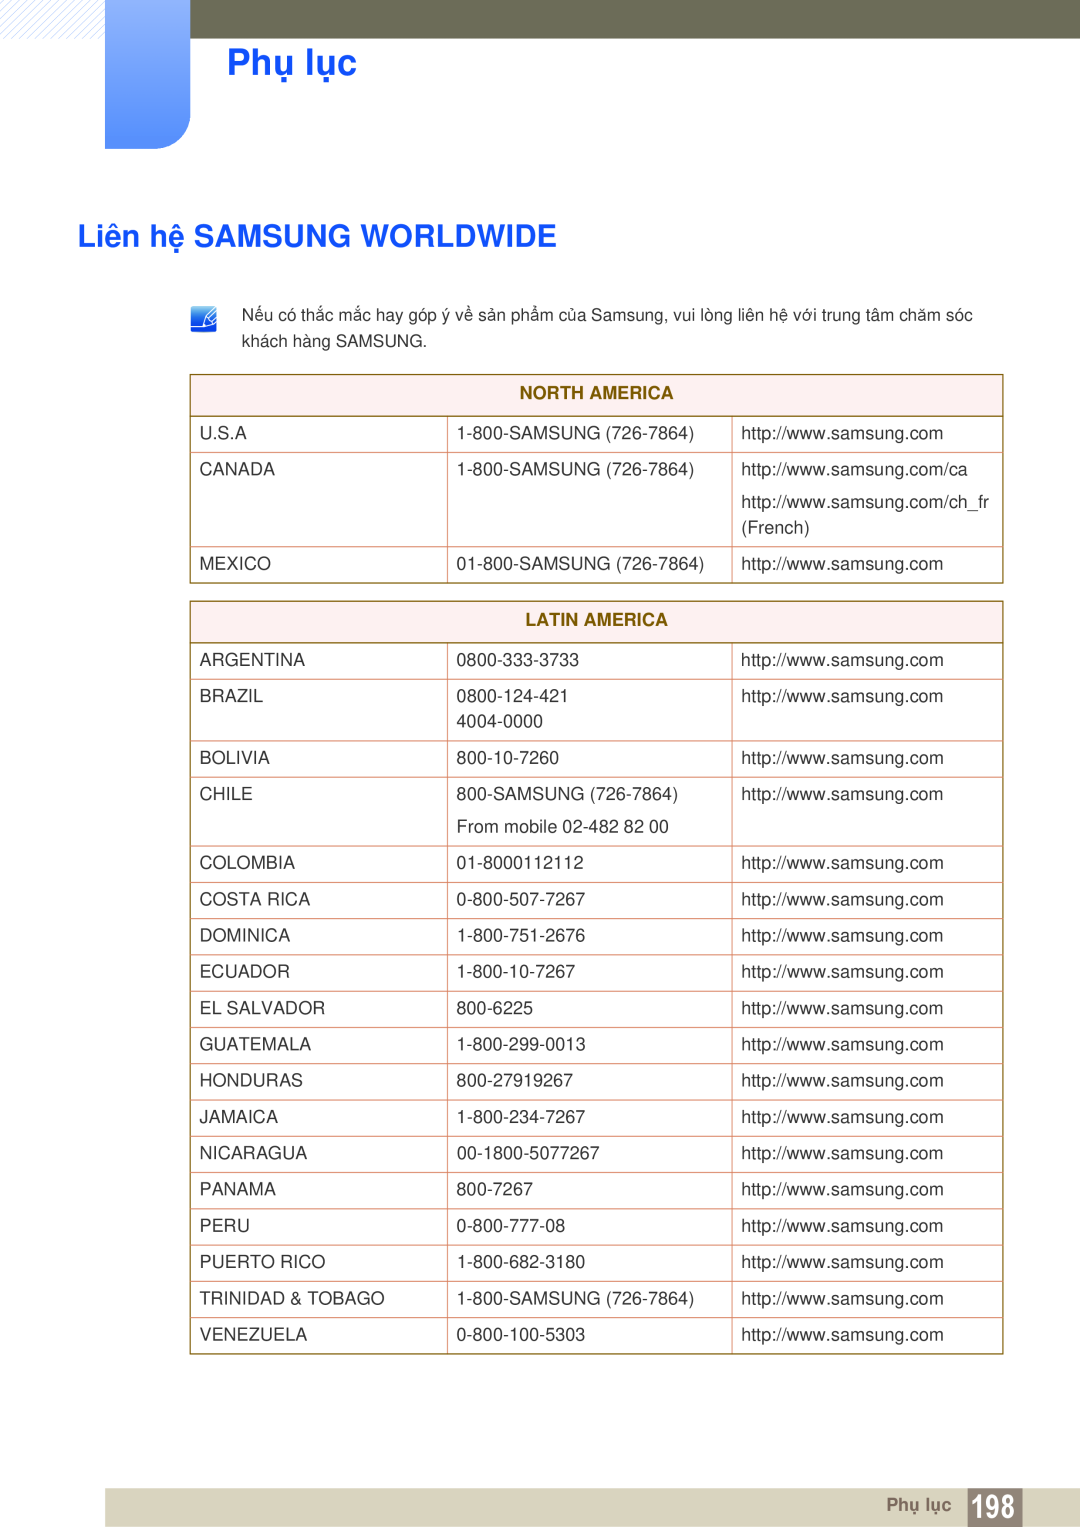 Samsung LH46DEPLGC/EN, LH55MEPLGC/XY, LH40MEPLGC/XY manual Phụ lục, Liên hệ SAMSUNG WORLDWIDE, North America, Latin America 